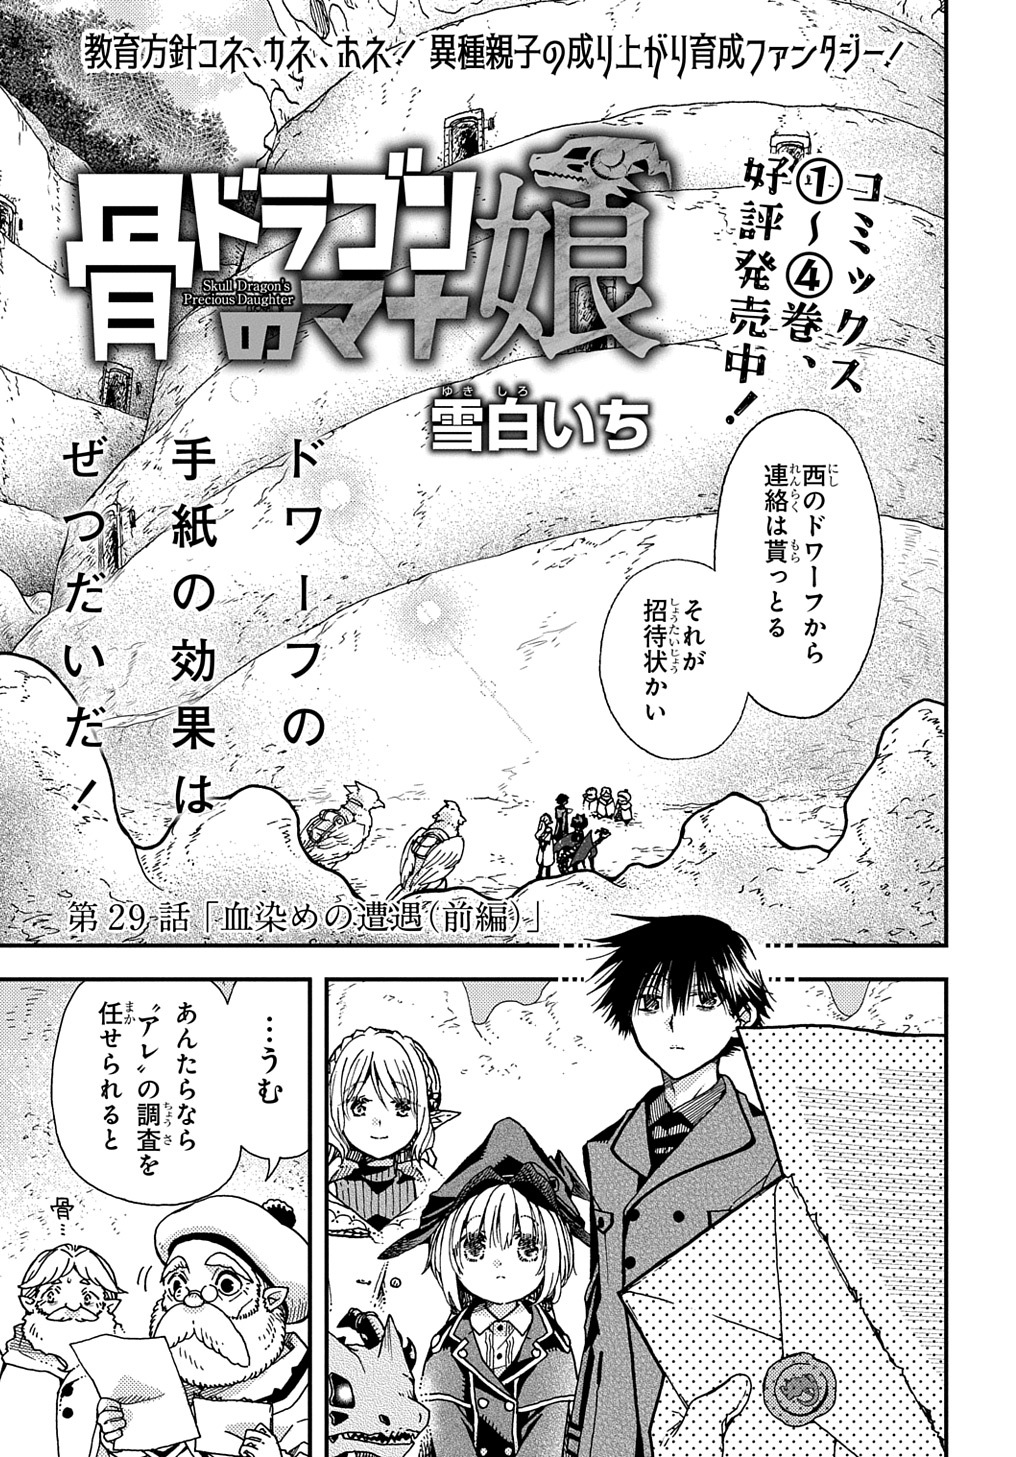 Hone Dragon no Mana Musume - Chapter 29 - Page 1